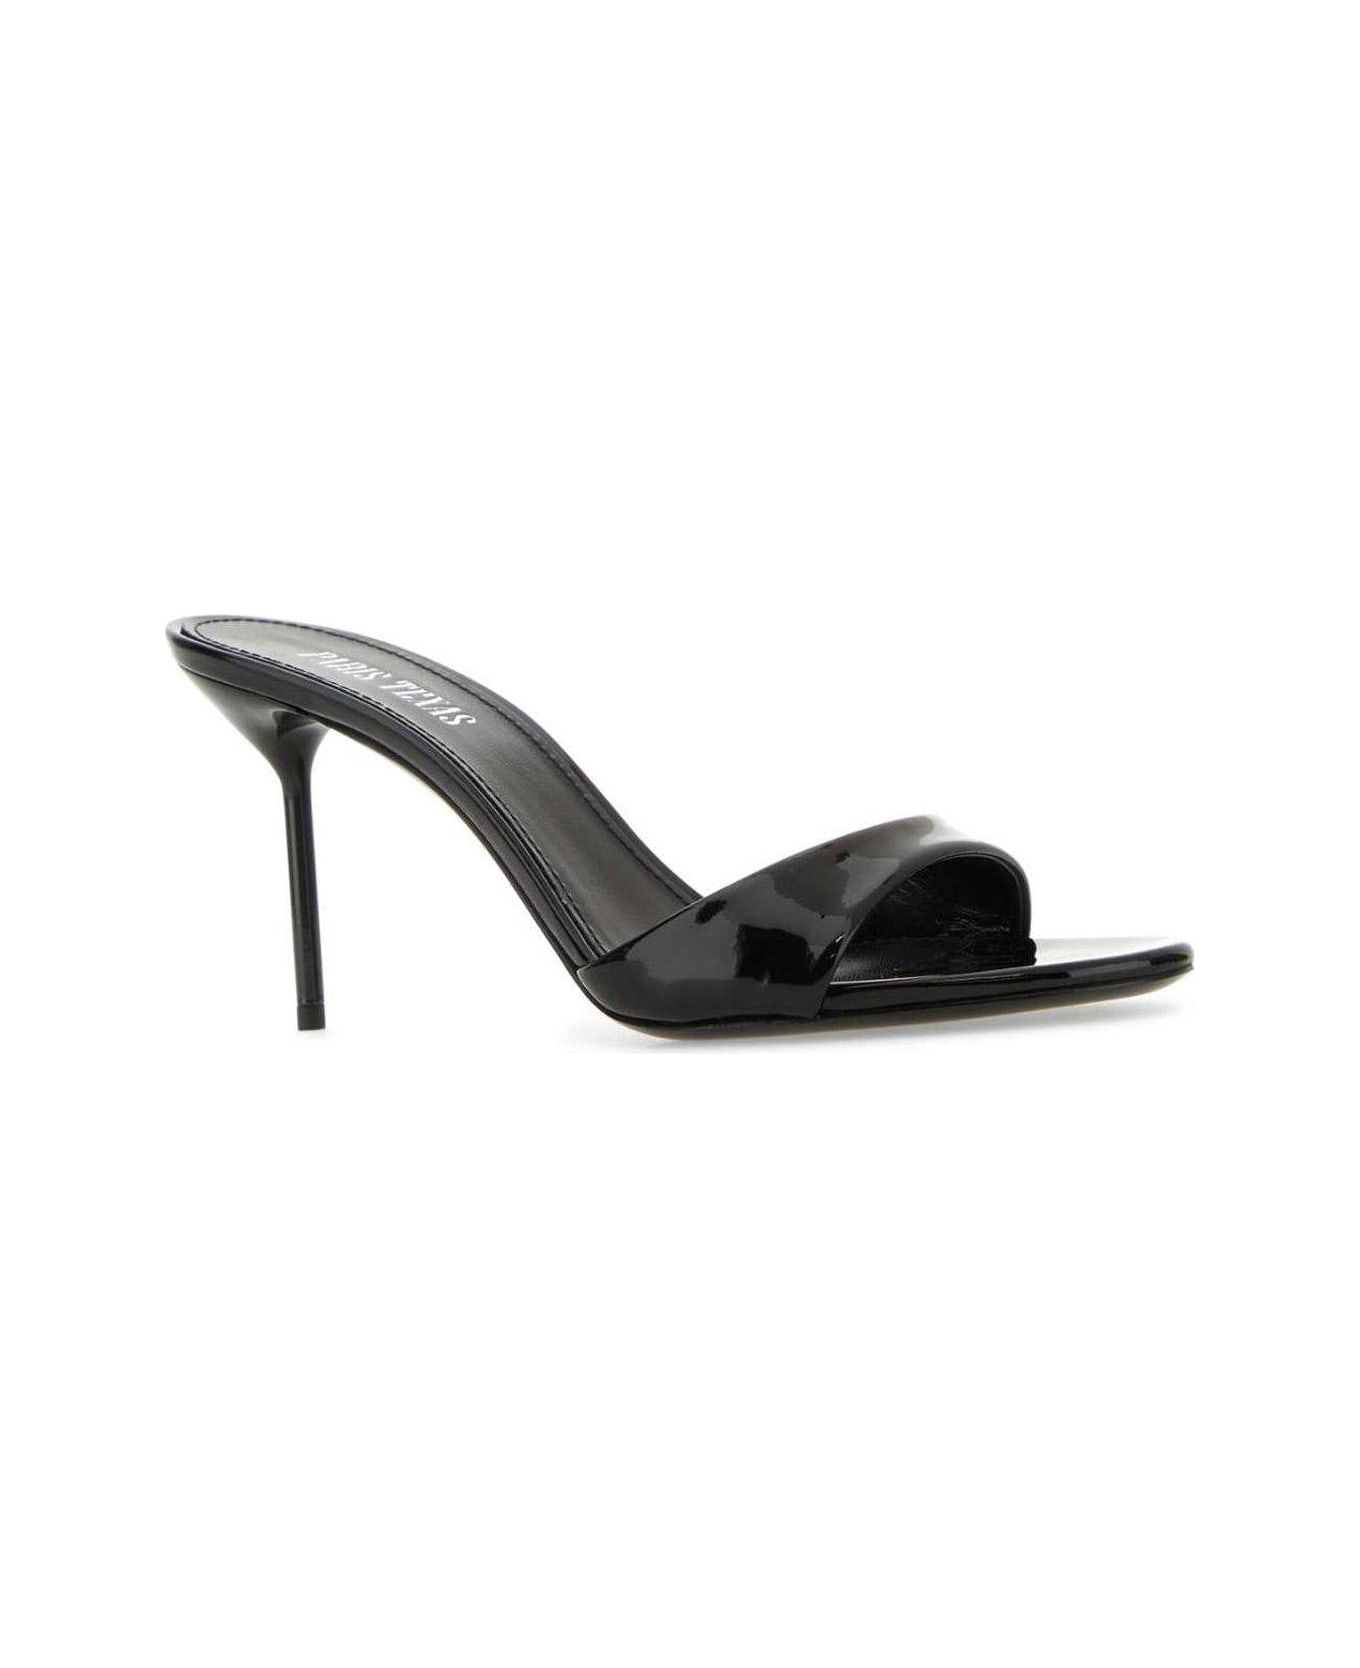 Paris Texas Lidia Stiletto Heel Mules - BLACK サンダル